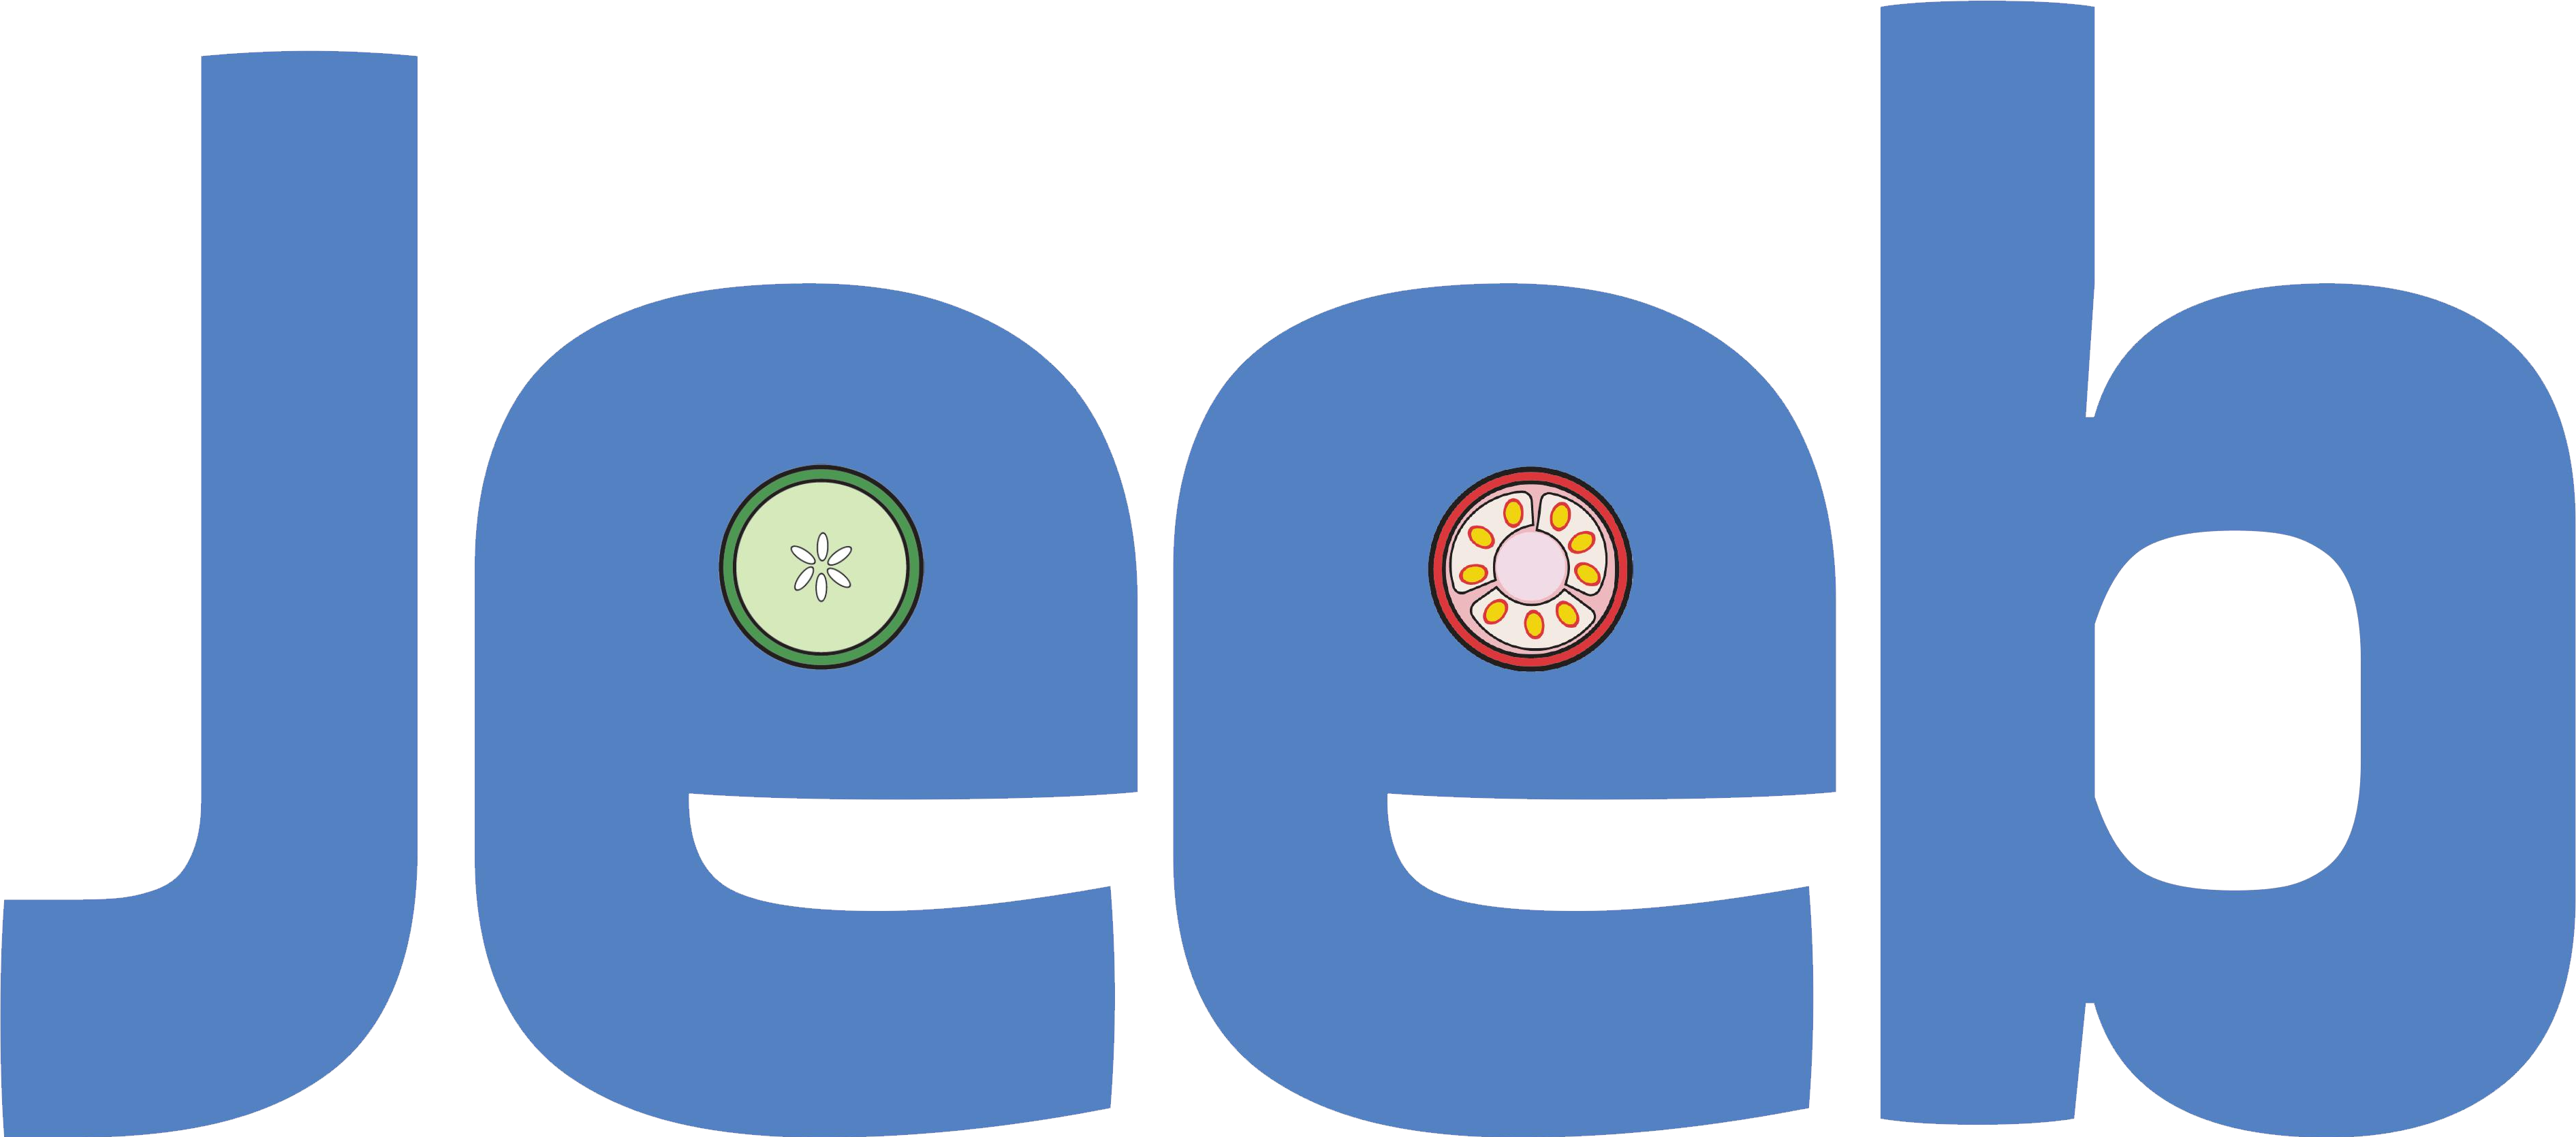 Jeeb logo